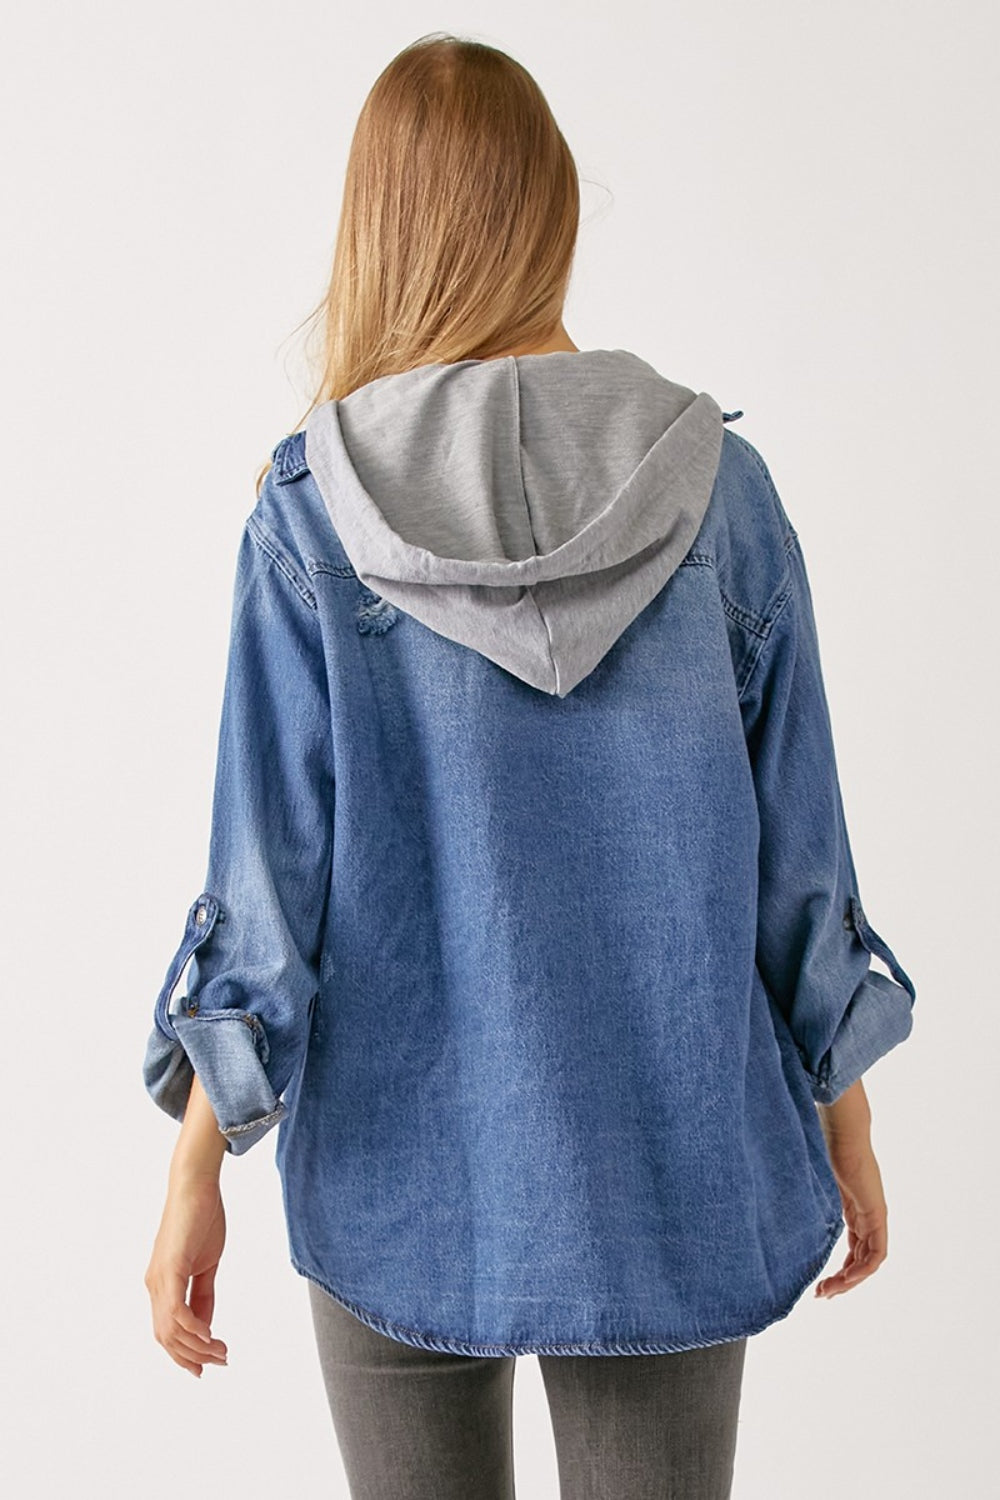 RISEN Zip Up Hooded Denim Shirt-Trendsi-[option4]-[option5]-[option6]-[option7]-[option8]-Shop-Boutique-Clothing-for-Women-Online